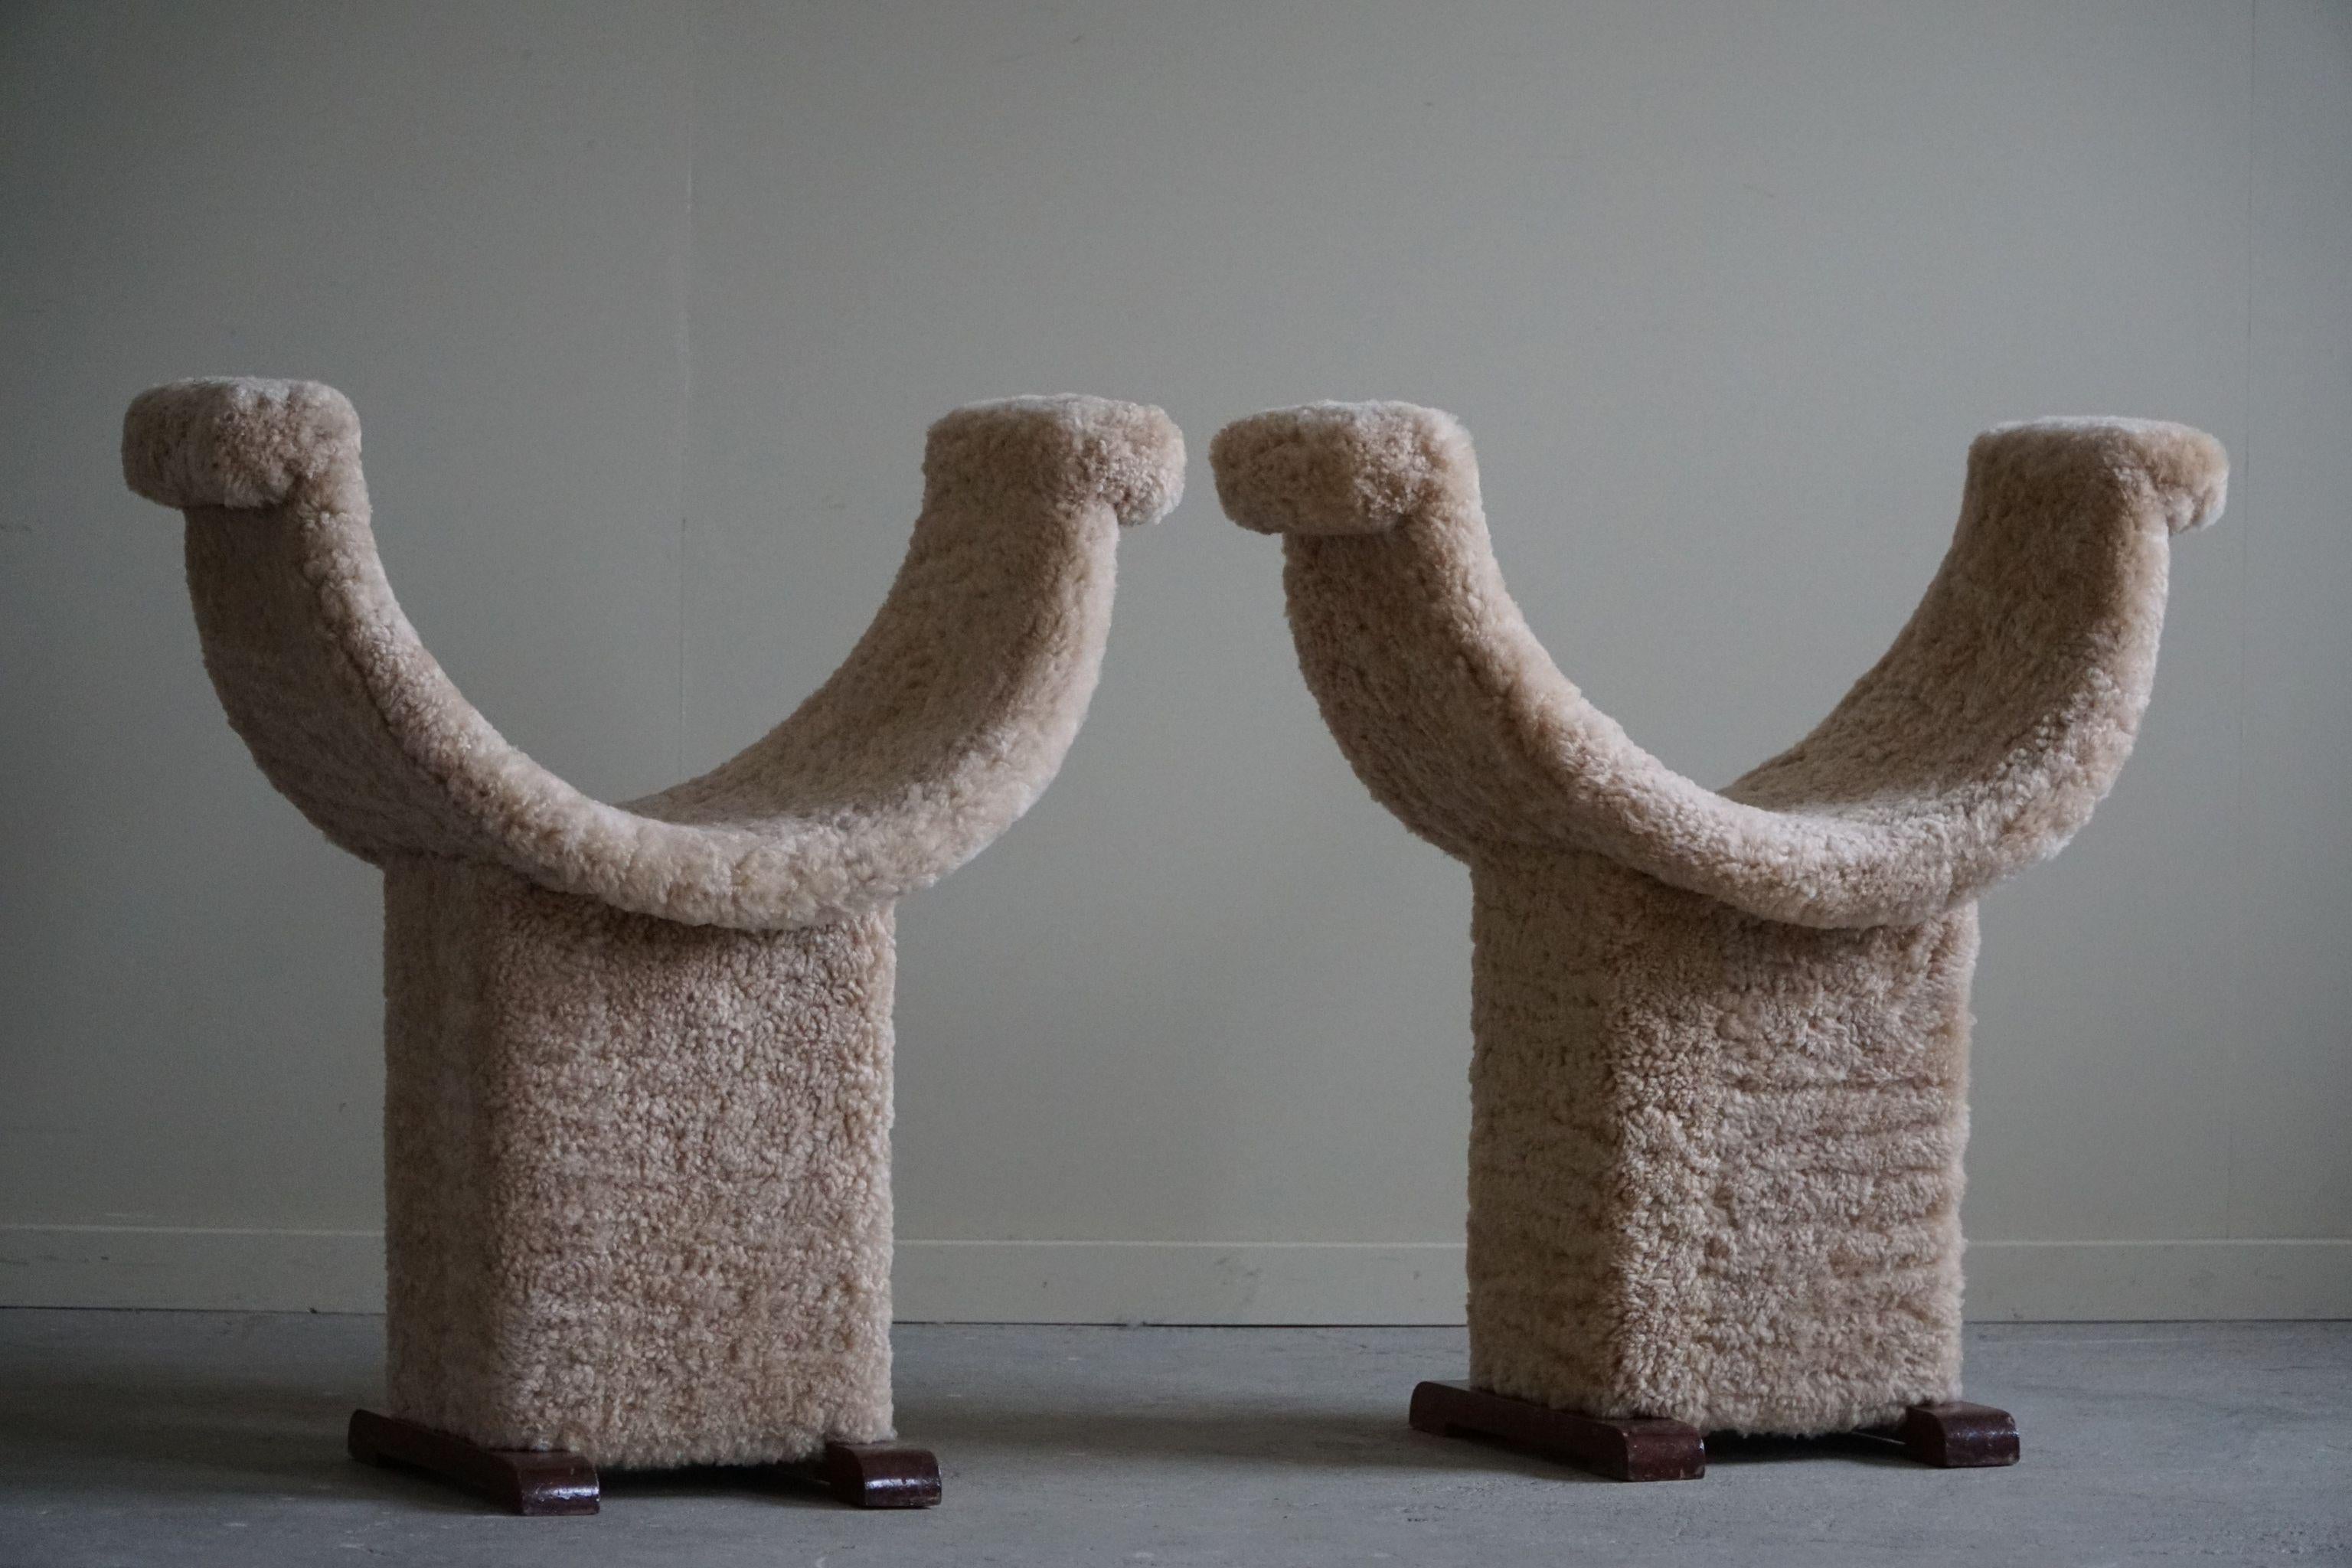 Il s'agit d'une paire de tabourets hauts et élégants fabriqués en Espagne dans les années 1940, au design moderne. Ils ont retrouvé une nouvelle vie et une touche douillette grâce à un rembourrage en douce laine d'agneau. Avec leurs formes